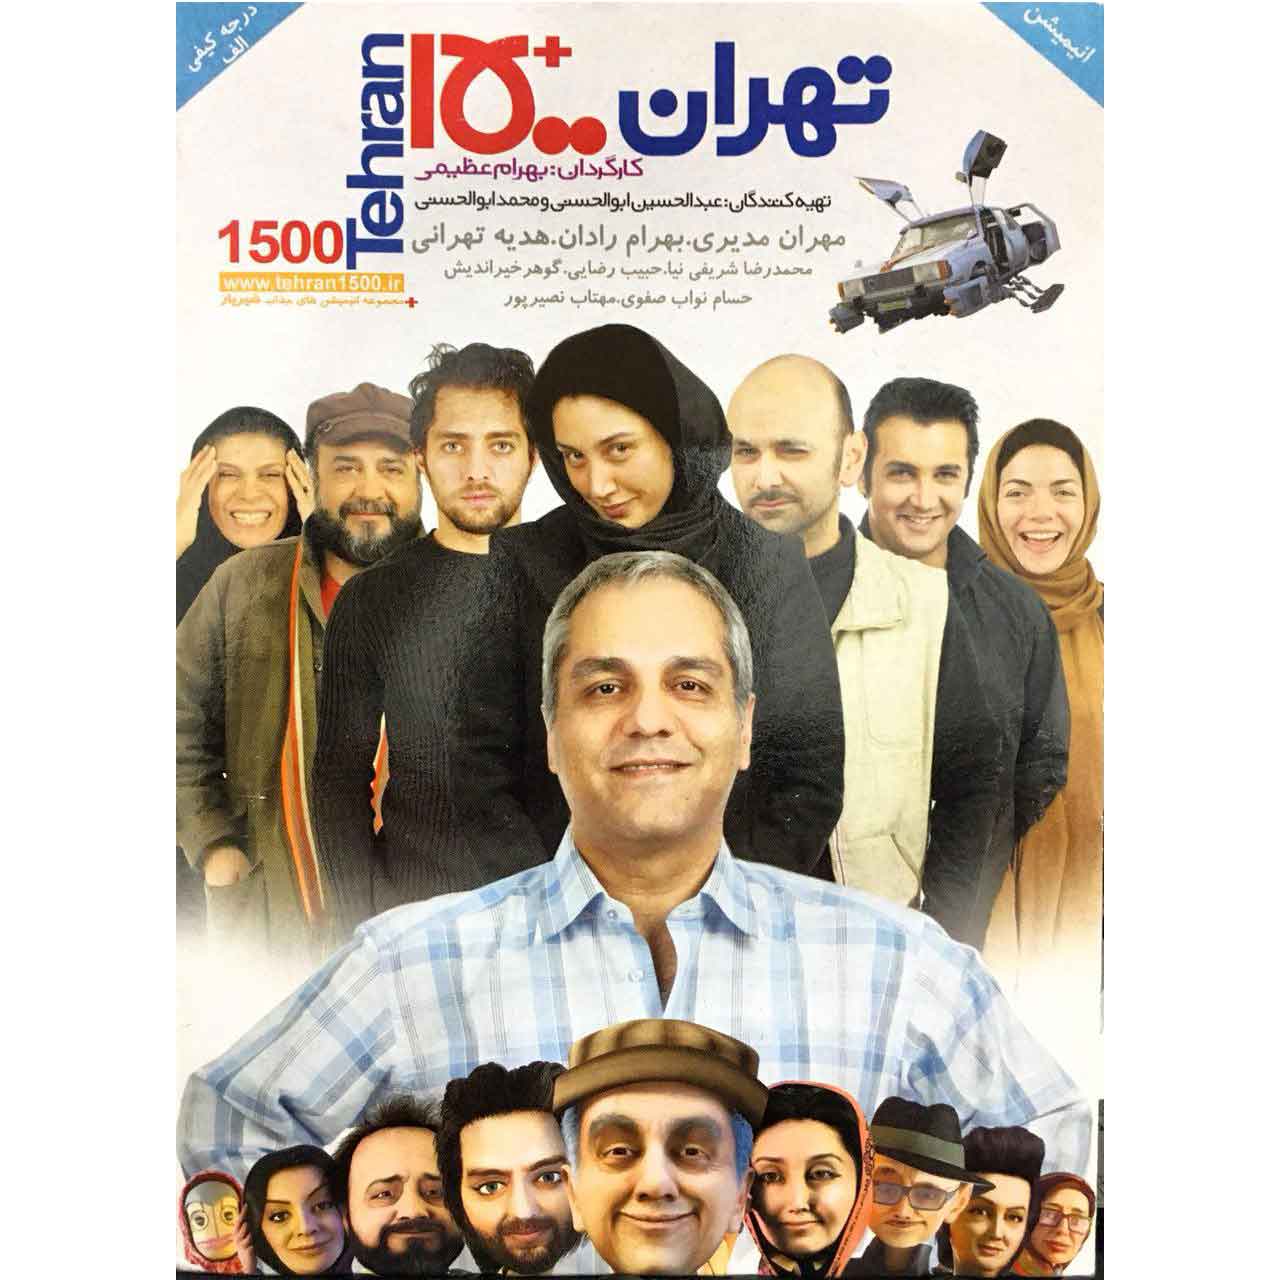 مجموعه انیمیشن تهران 1500 اثر غلامرضا عظیمی